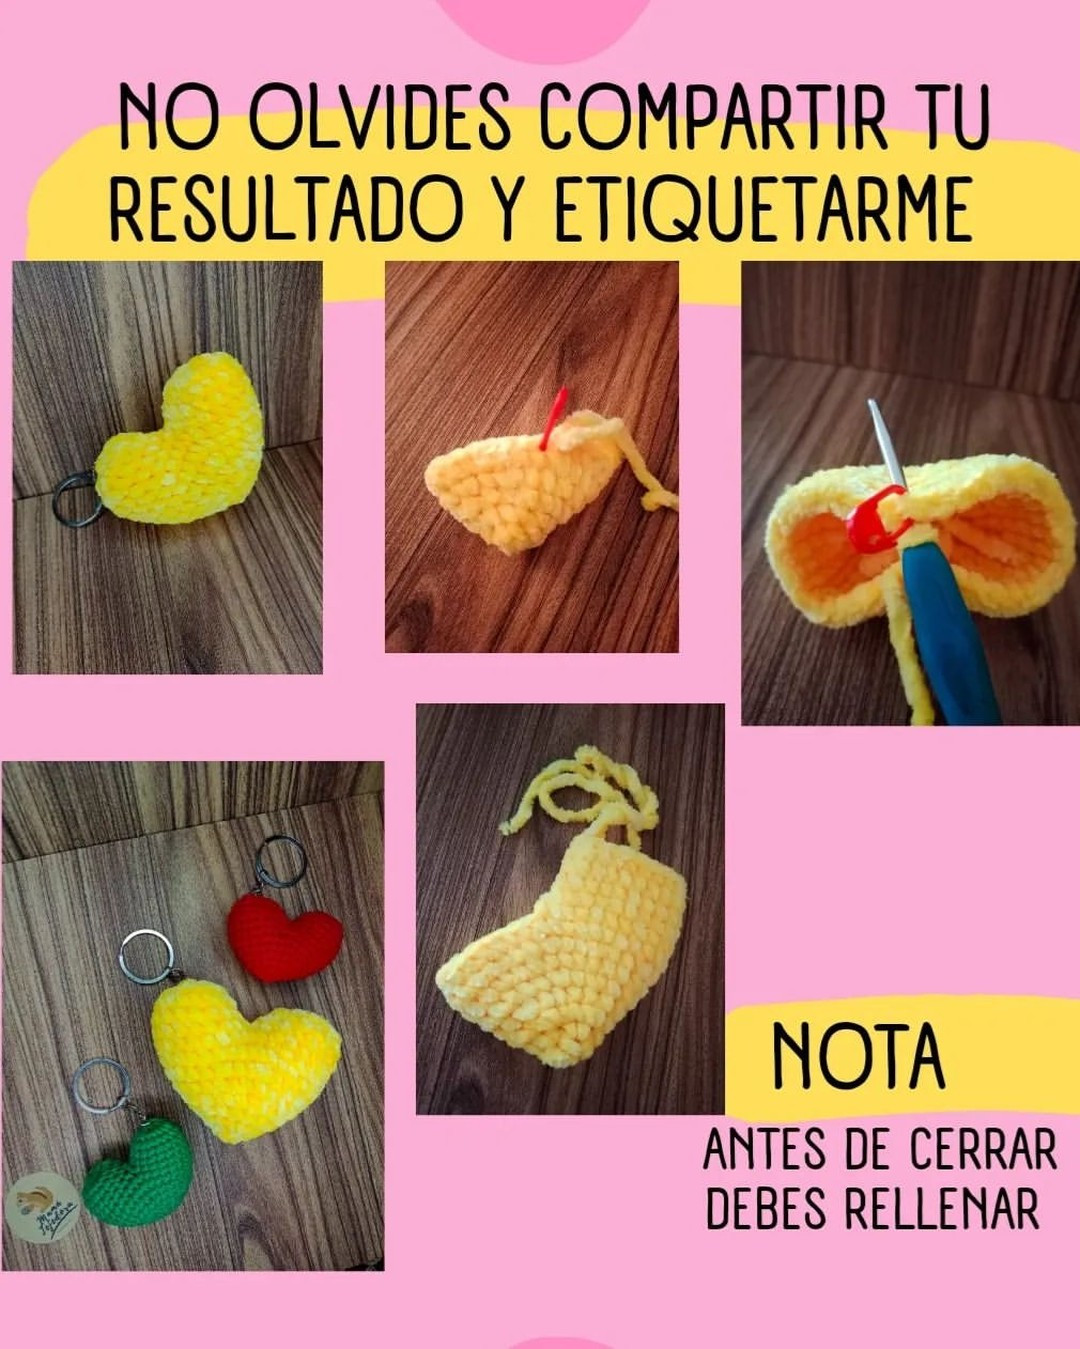 free crochet pattern heart keychain.